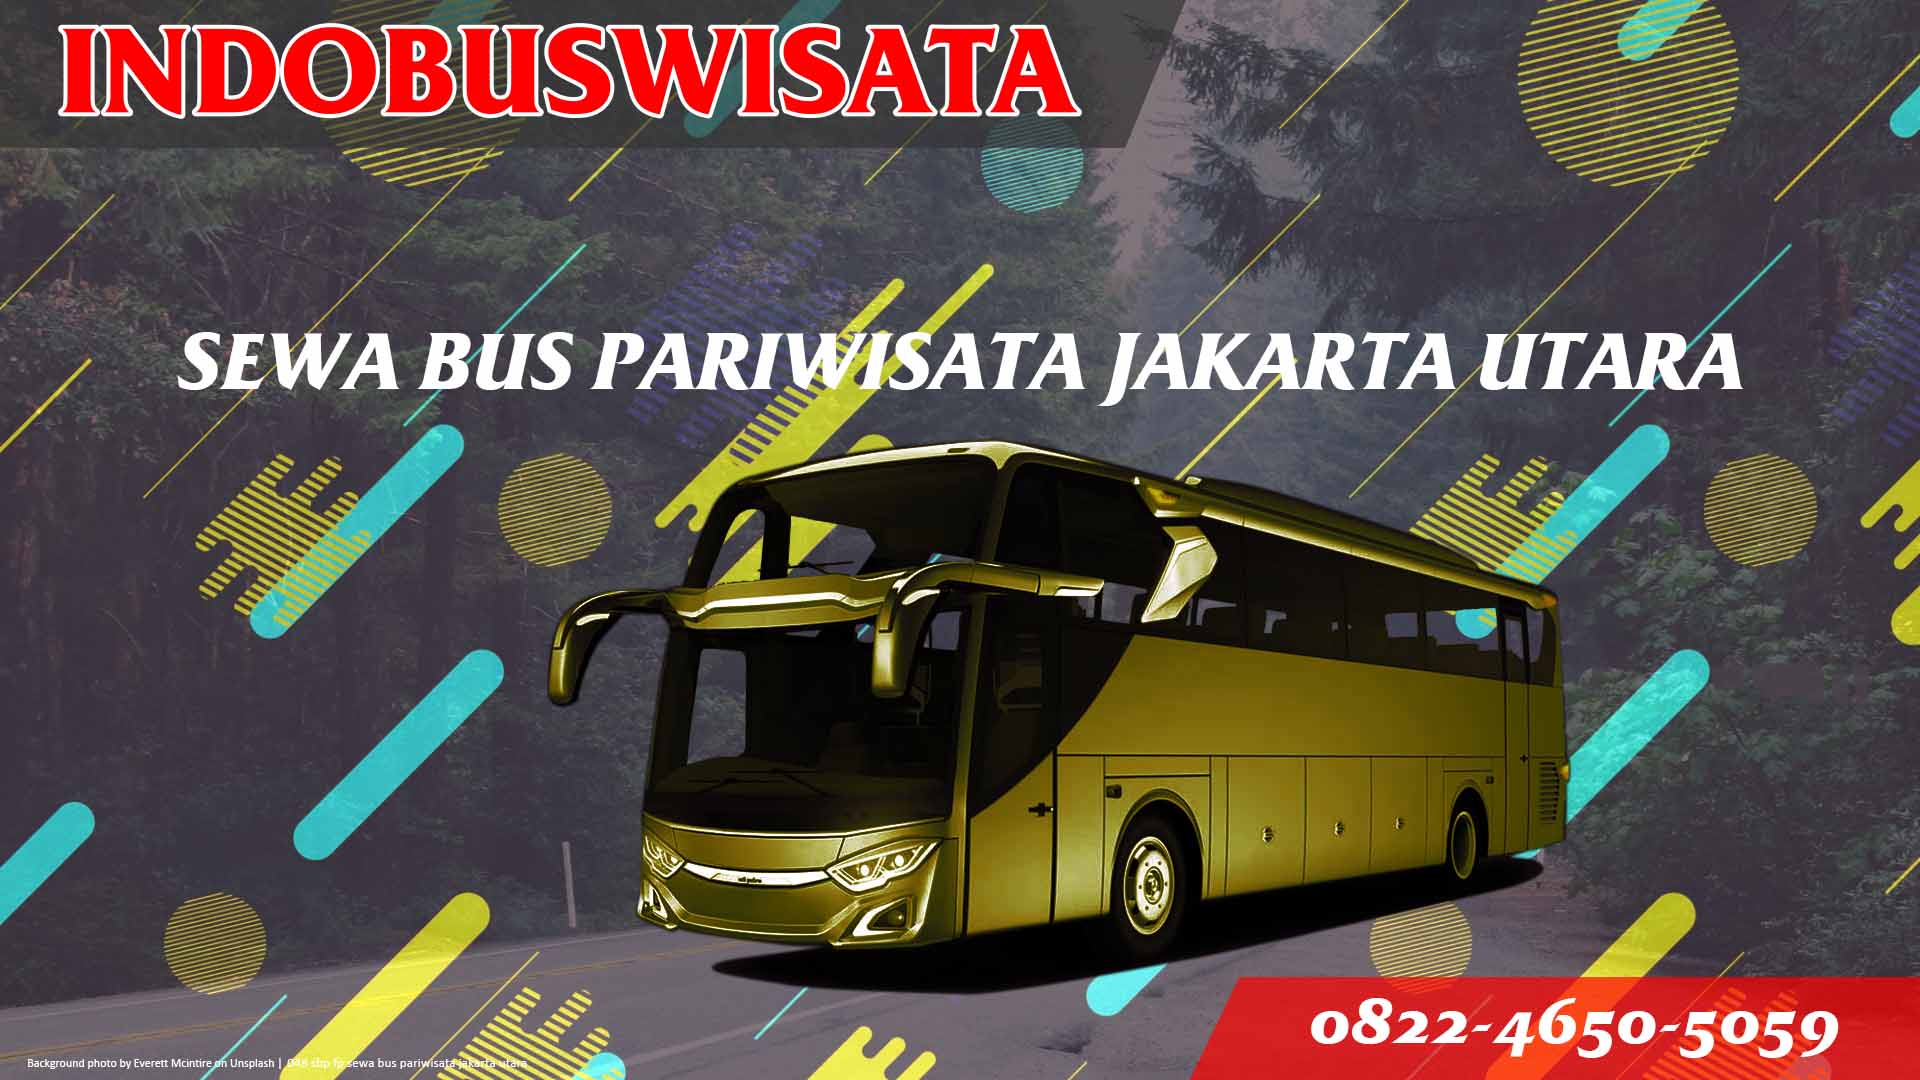 048 Sbp Fp Sewa Bus Pariwisata Jakarta Utara Indobuswisata